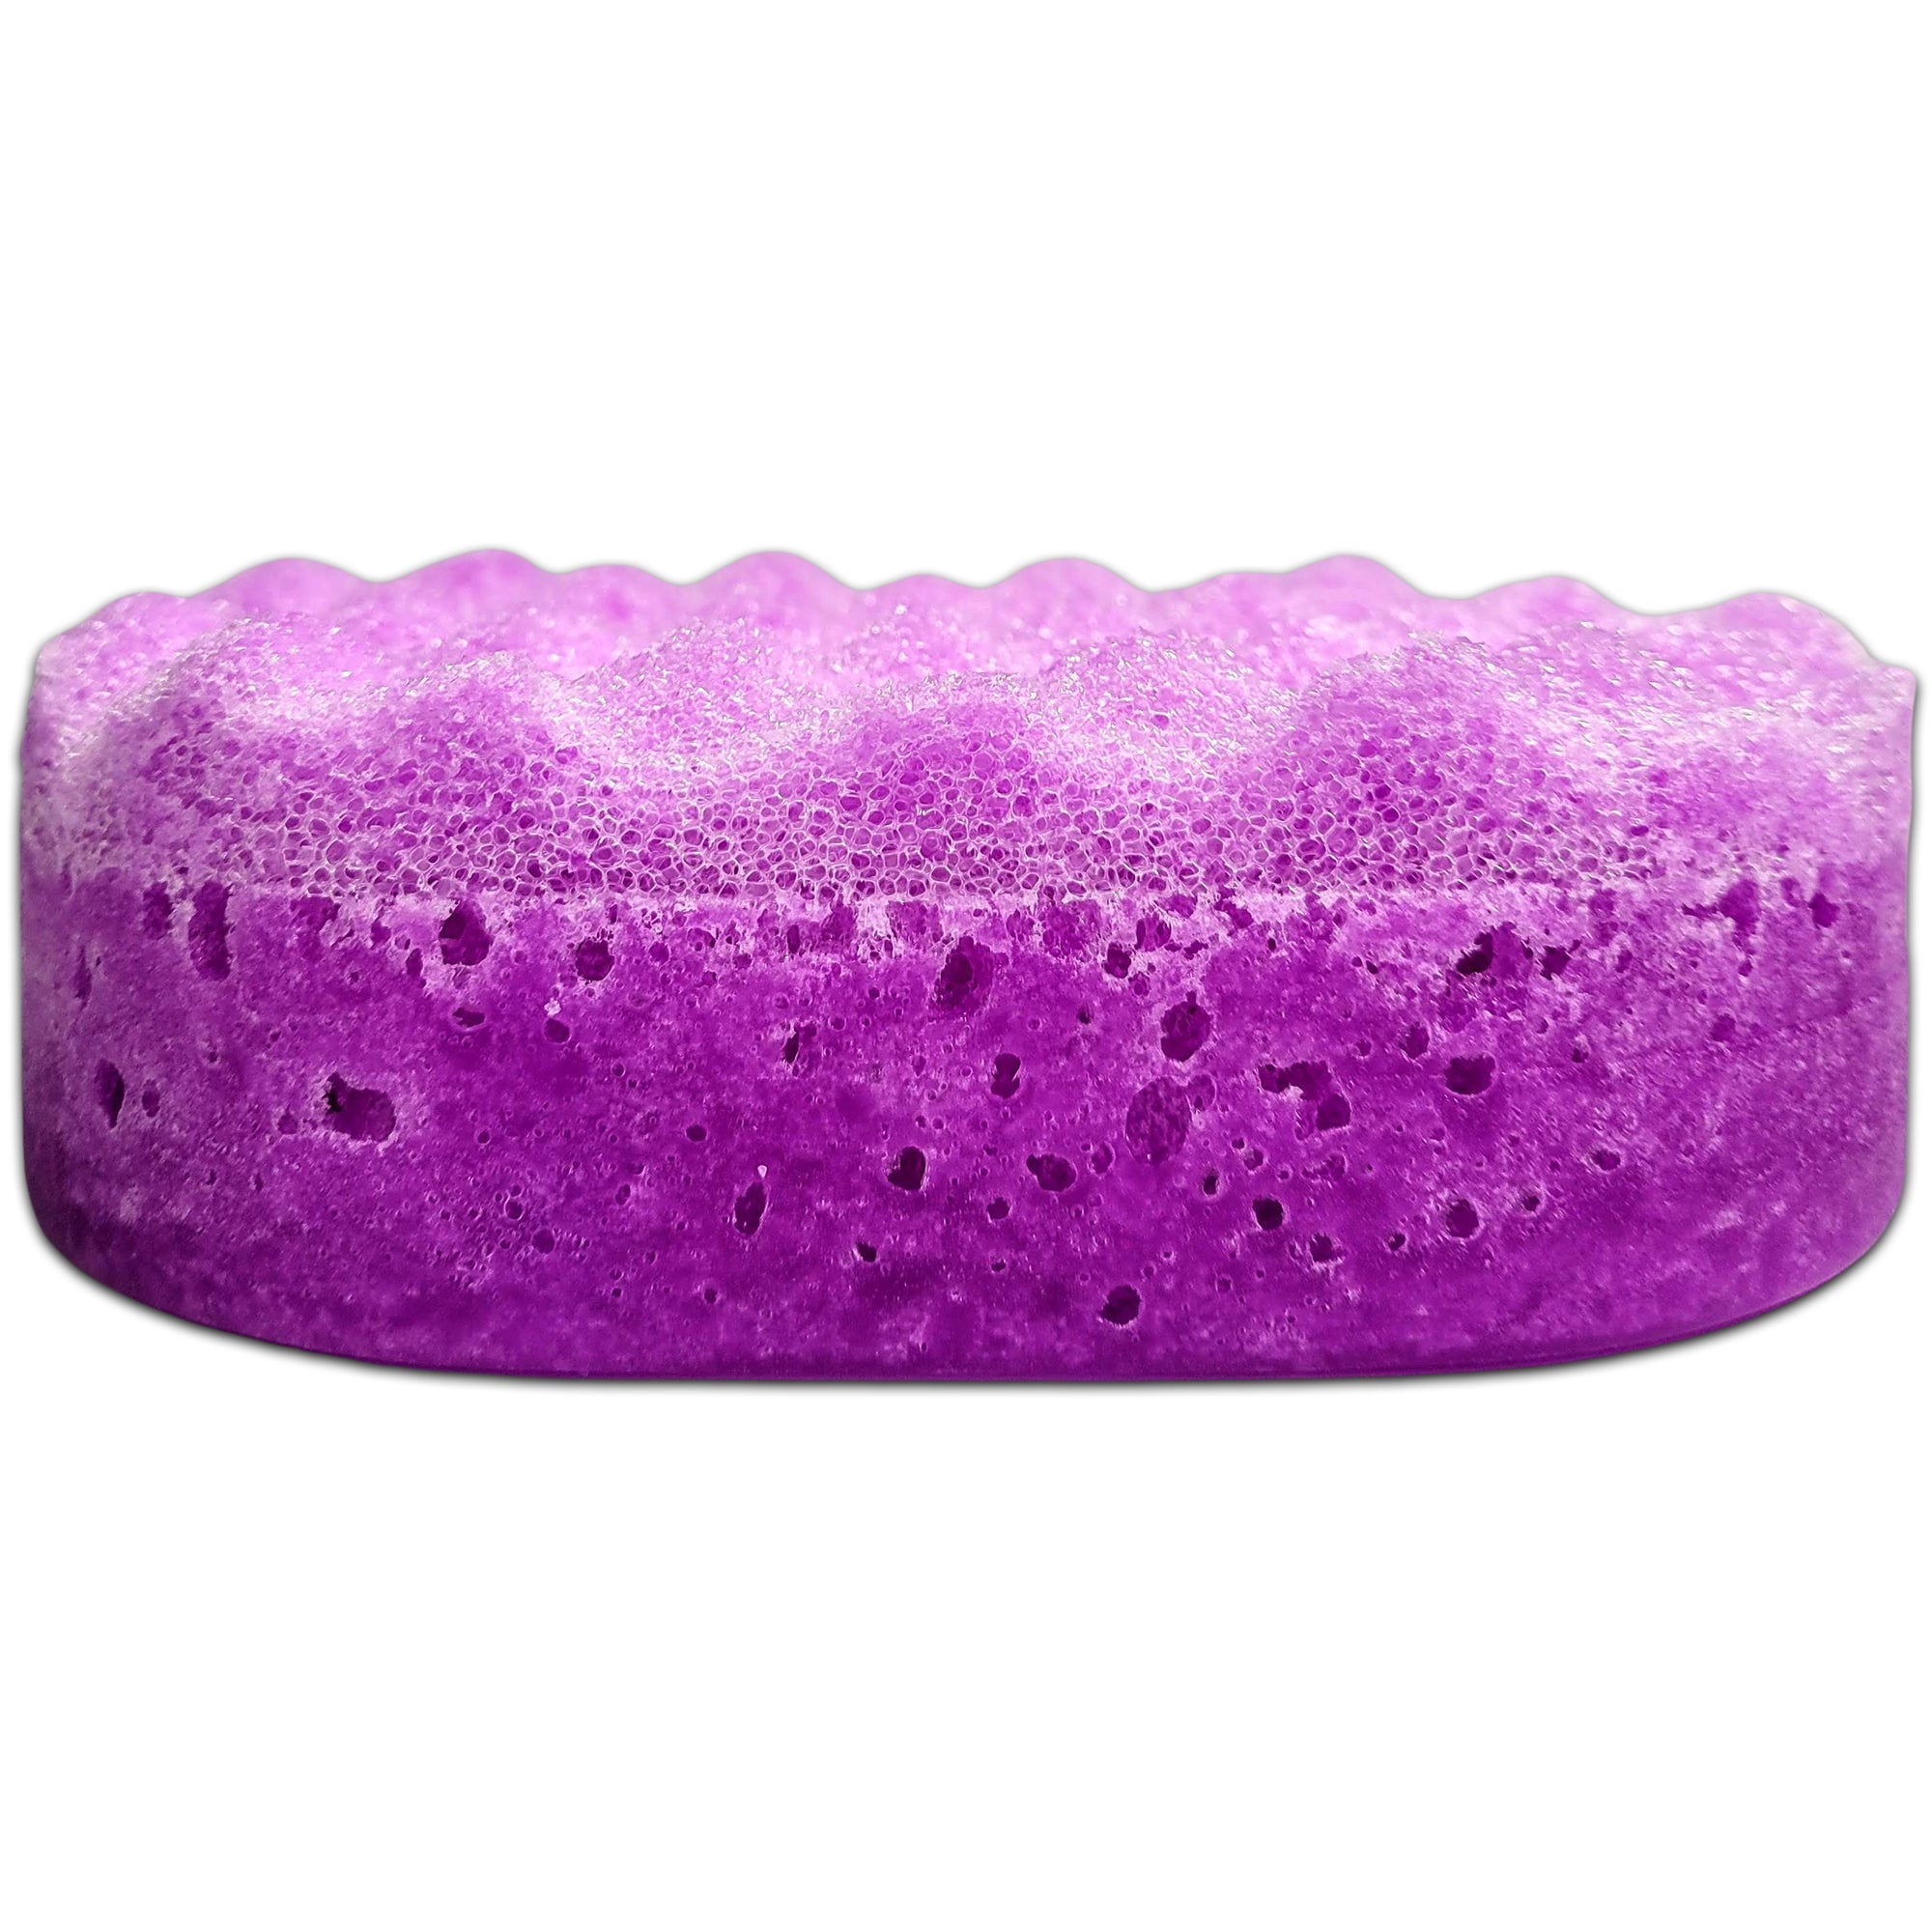 Baby Bath Soap Sponges